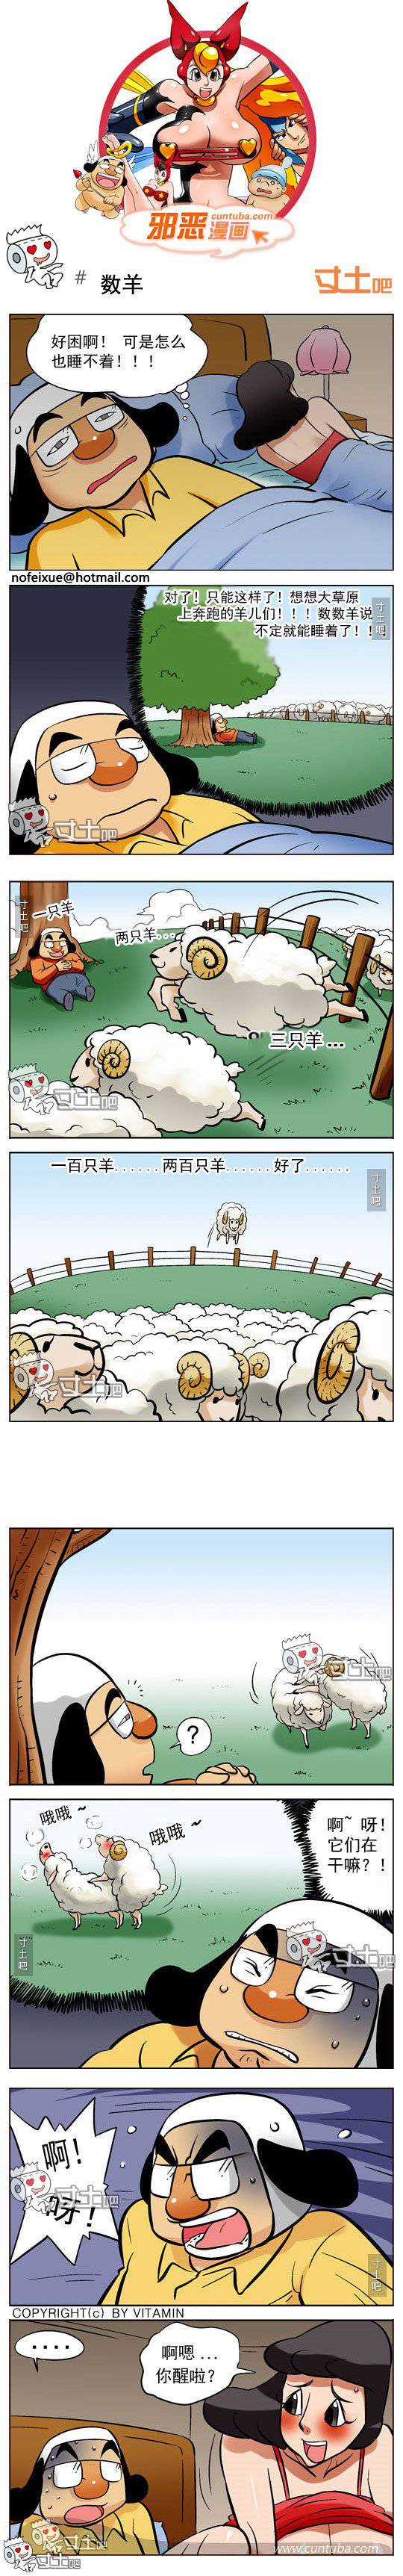 邪恶漫画爆笑囧图第219刊：逮捕技巧与数羊